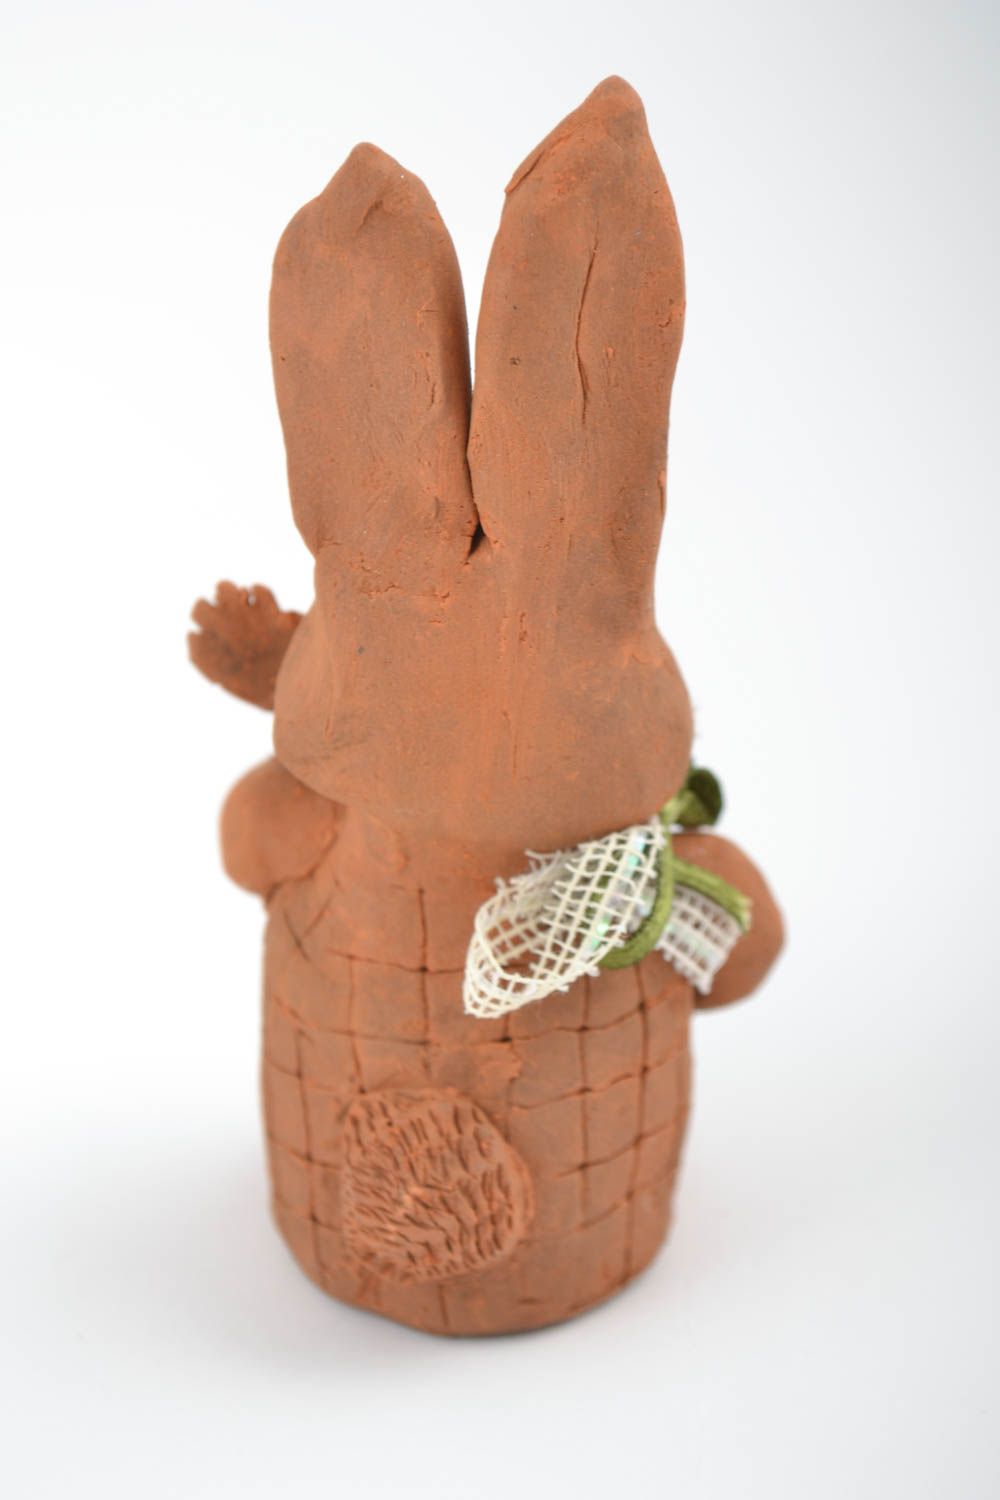 Глиняная статуэтка ручной работы фигурка для декора дома сувенир из керамики фото 4